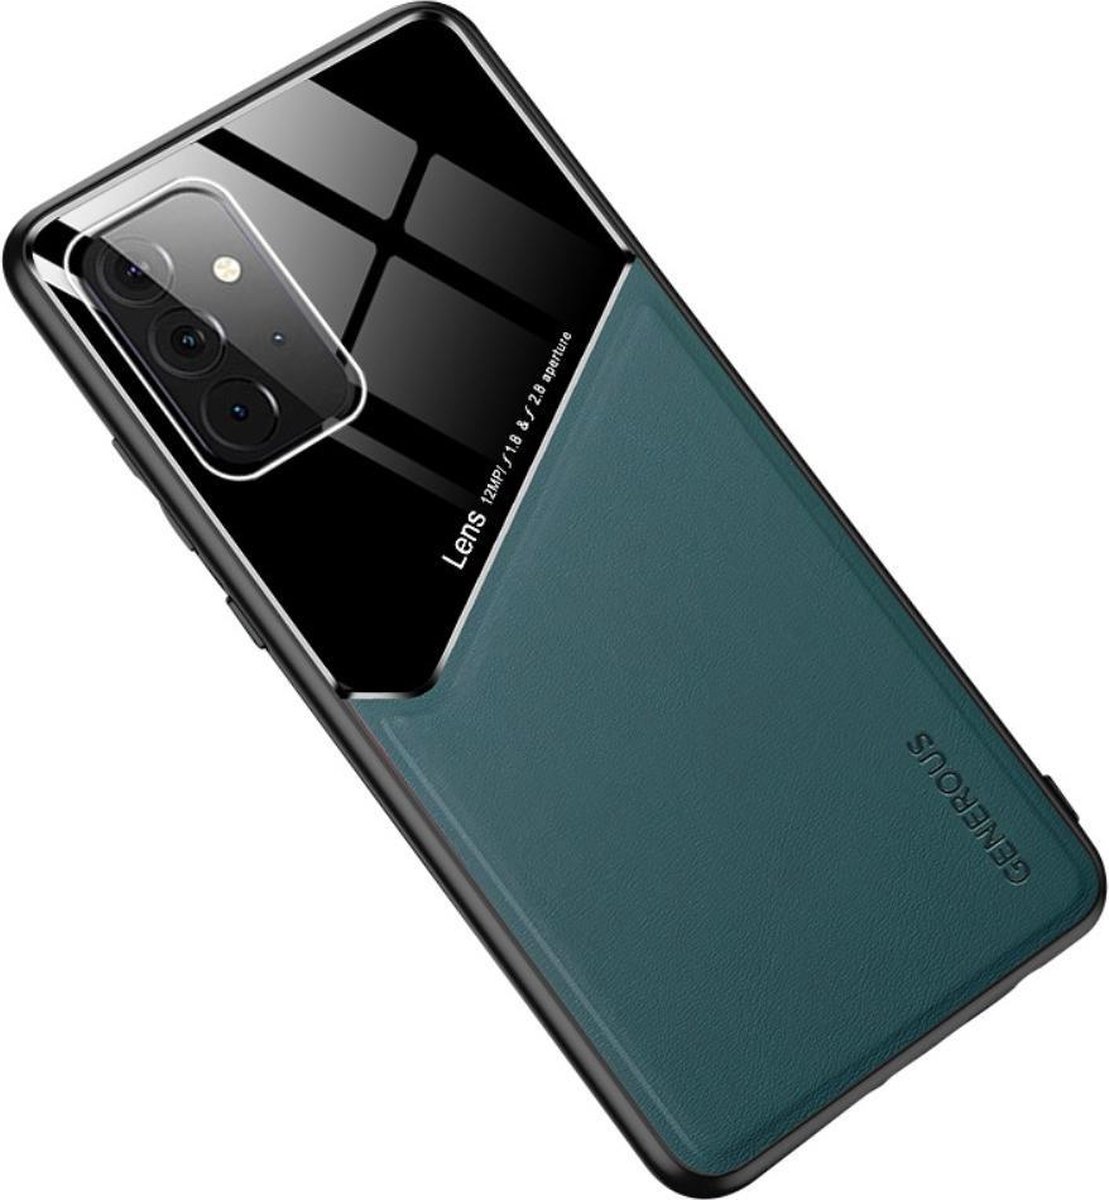 Groene hard cover Samsung Galaxy A72 geschikt voor magnetische autohouder